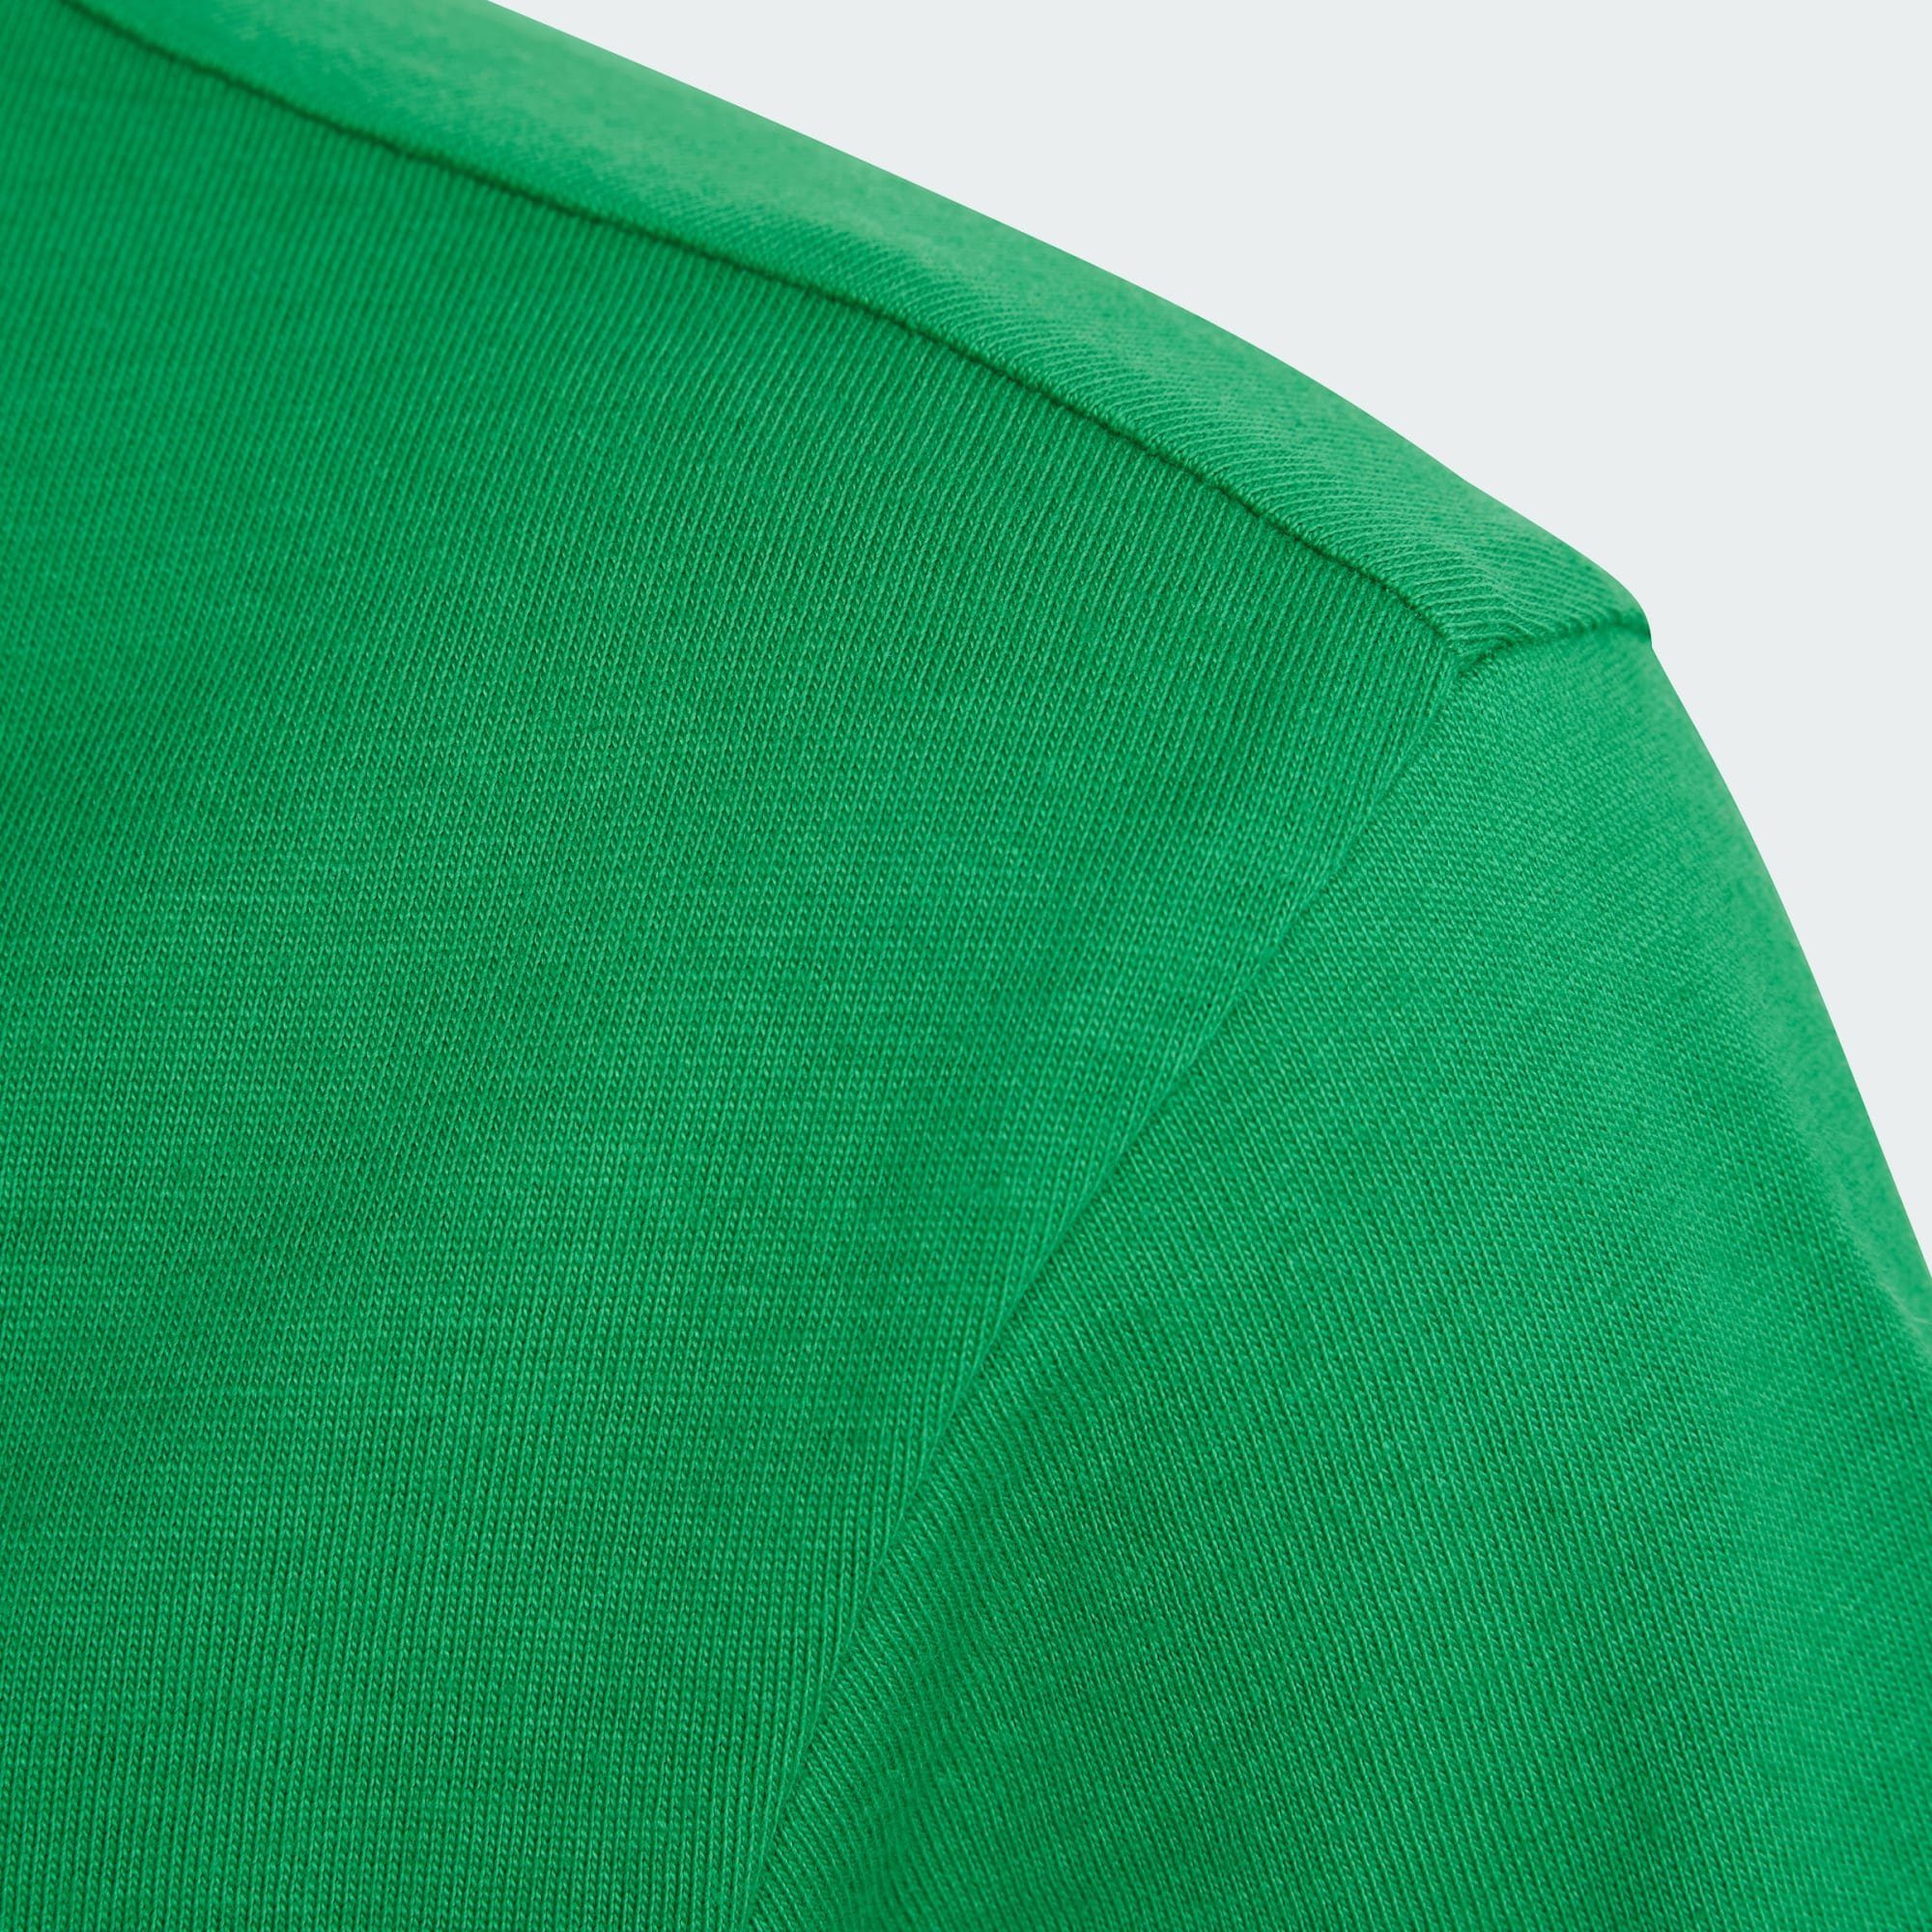 T-SHIRT adidas Green T-Shirt TREFOIL Originals